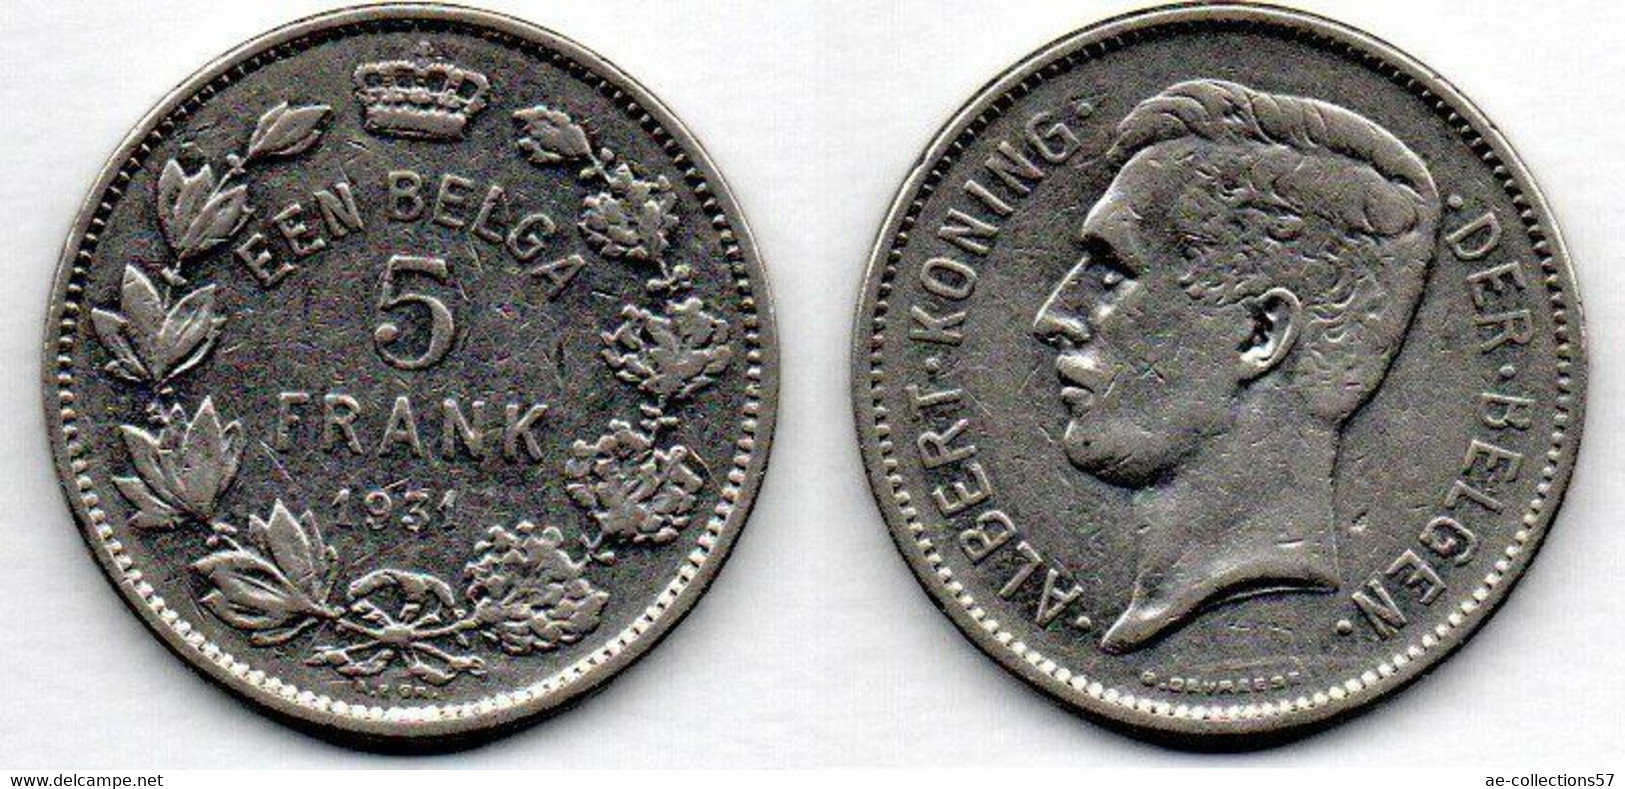 Belgique -  5 Francs  1931 TB - 5 Frank & 1 Belga